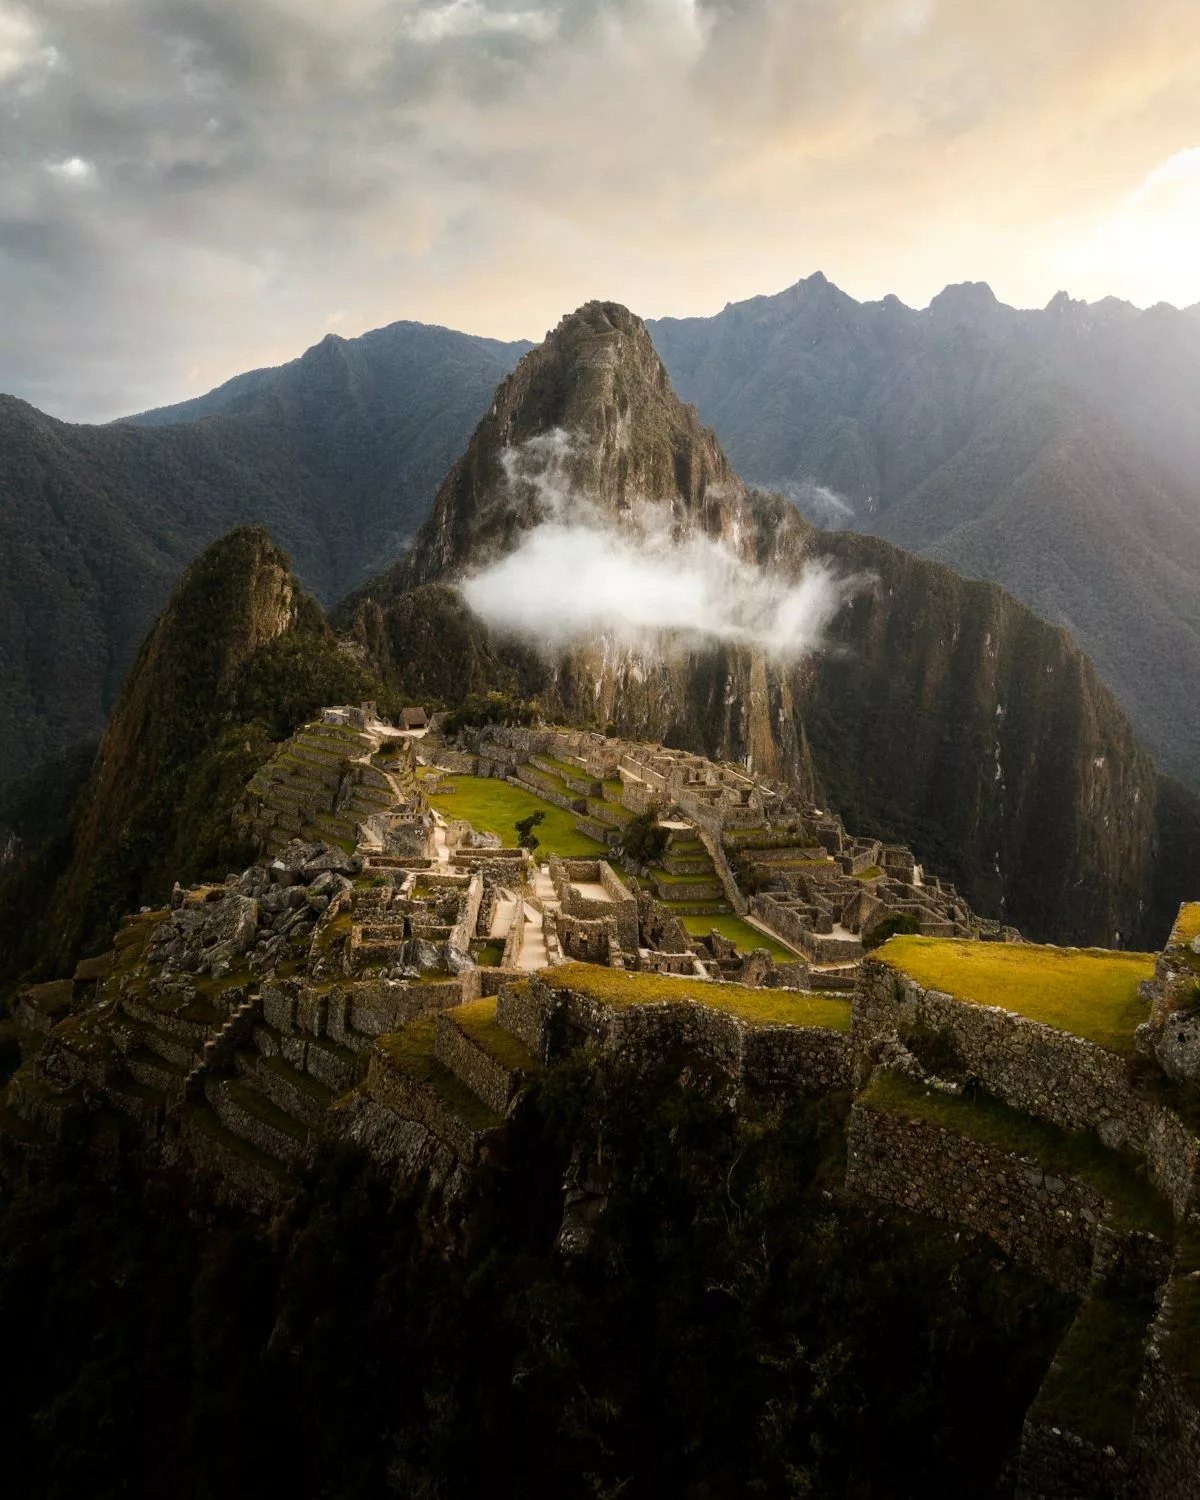 Hiking the Inca Trail in Peru